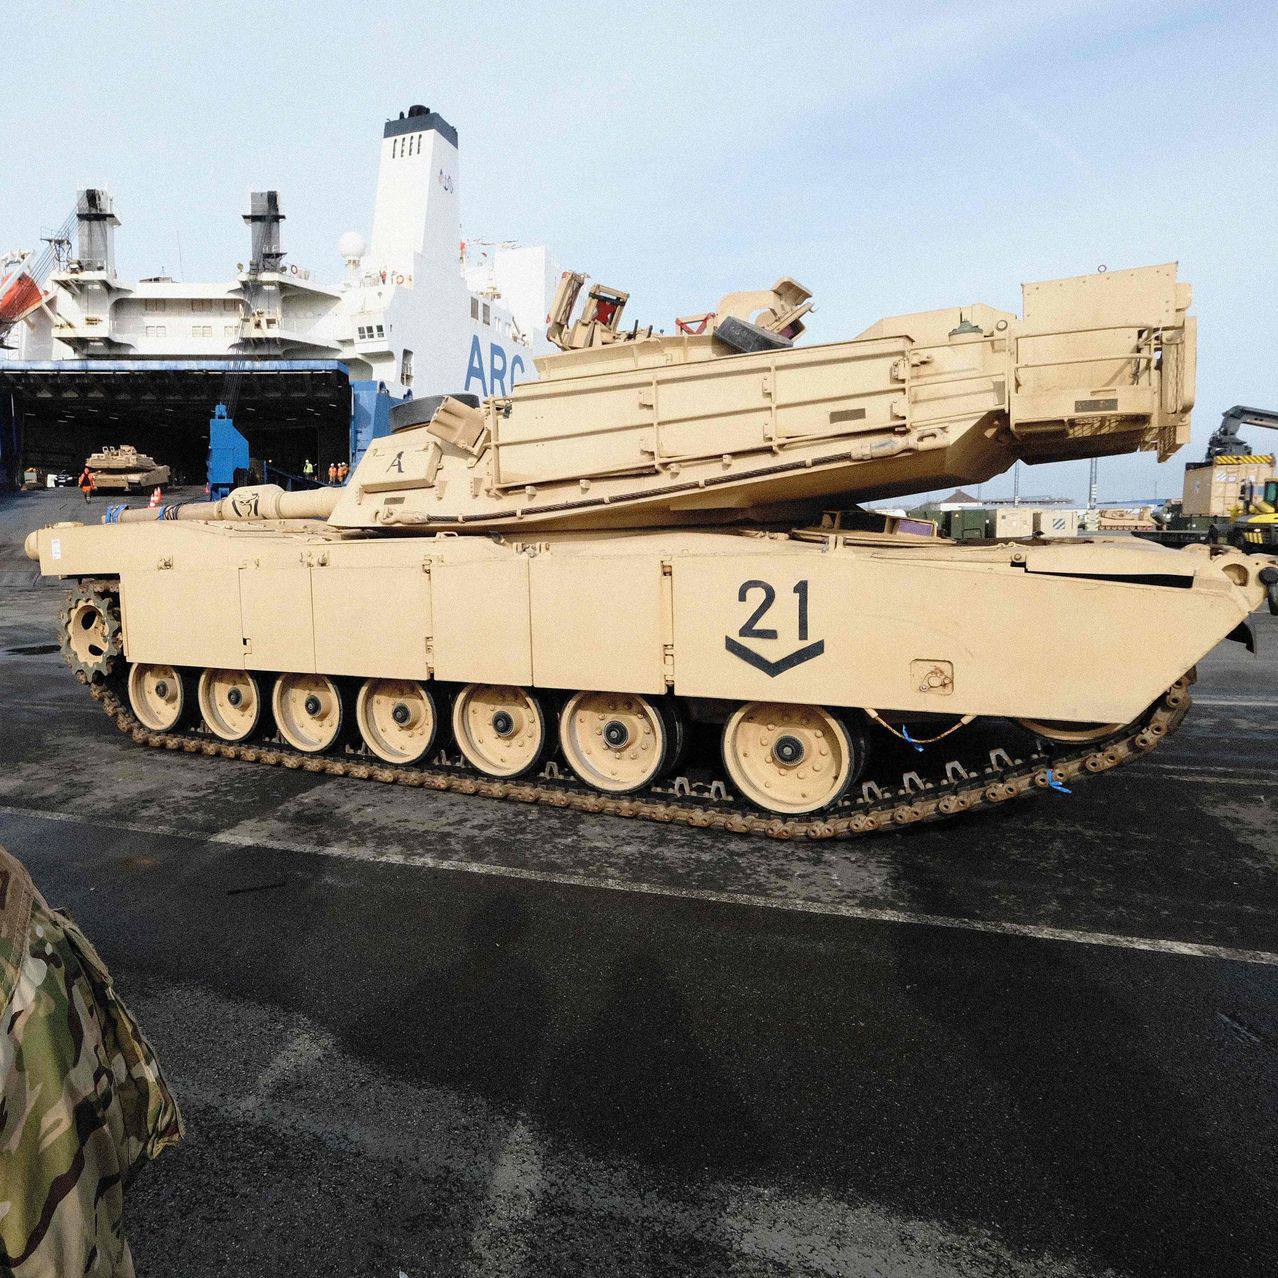 Администрация Джо Байдена склоняется к отправке значительного количества танков Abrams M1 в Украину, - пишет WSJ со ссылкой на официальных лиц США